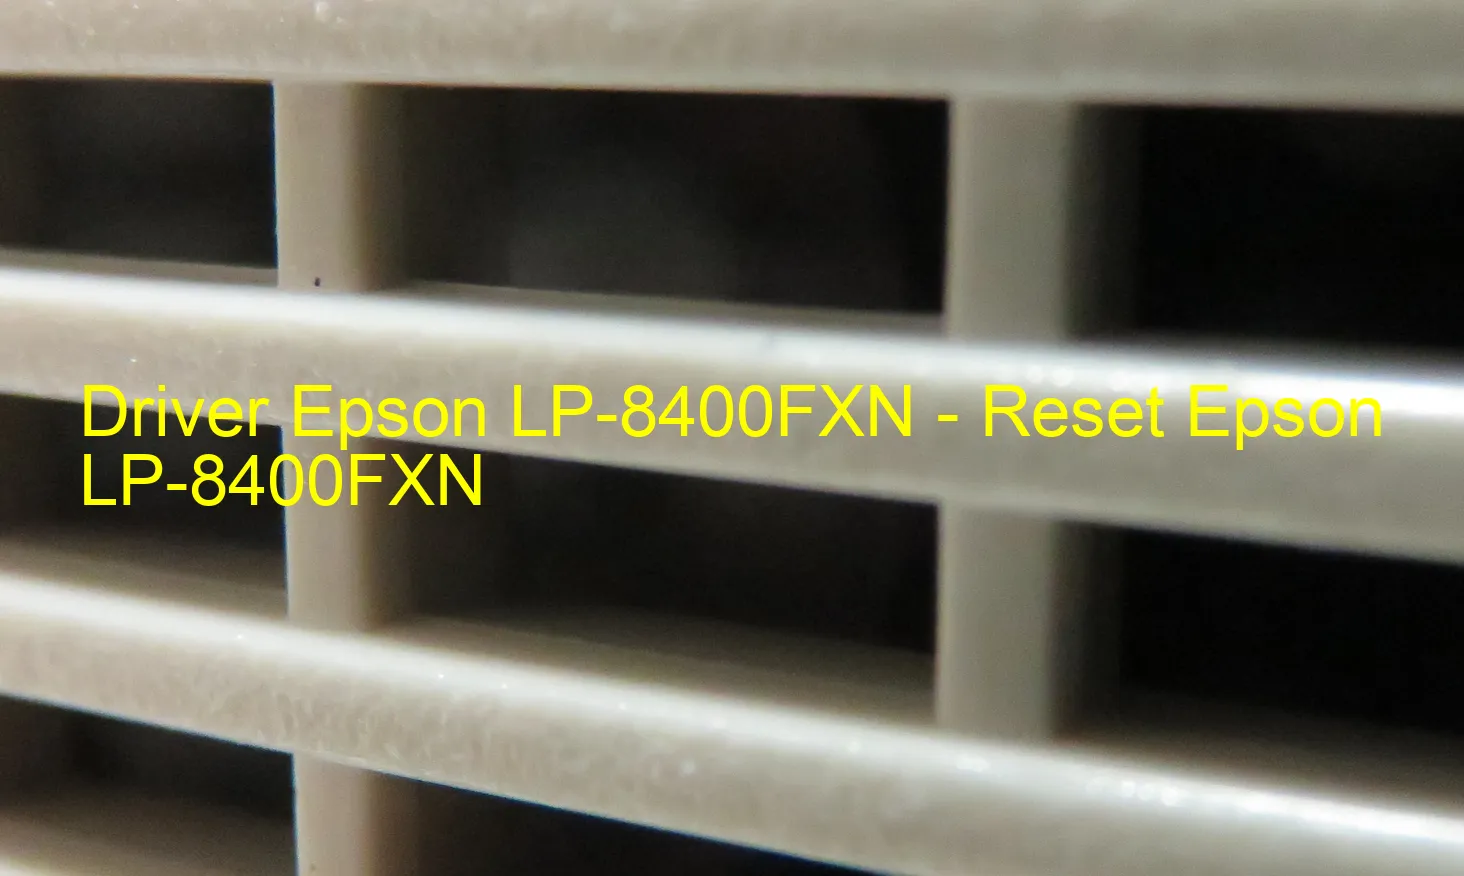 Epson LP-8400FXNのドライバー、Epson LP-8400FXNのリセットソフトウェア